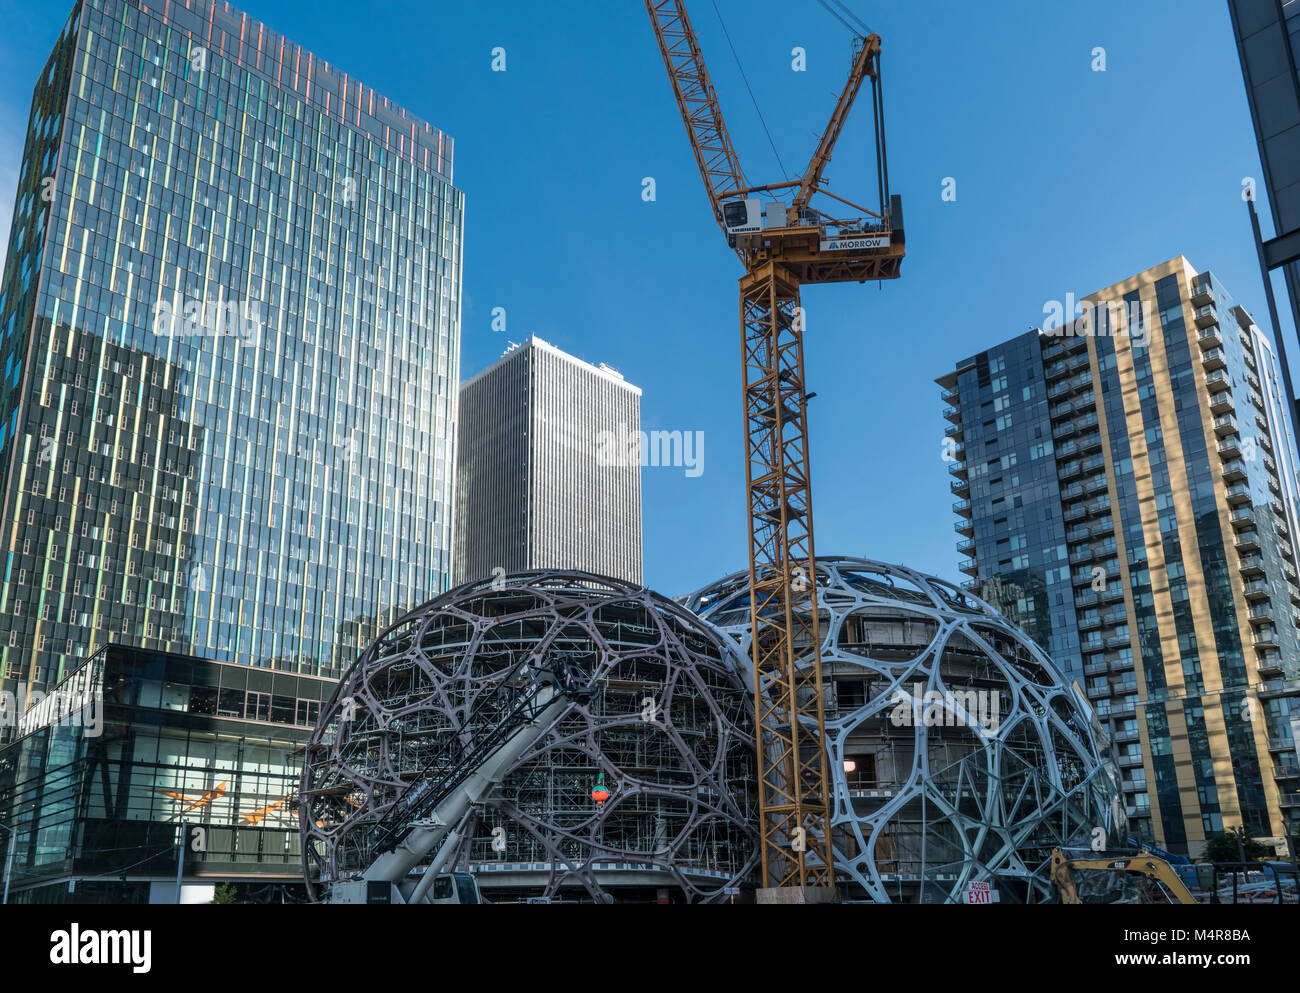 Bio-sphères, les dômes géodésiques, Amazon Corporation, Seattle, Washington, USA Banque D'Images